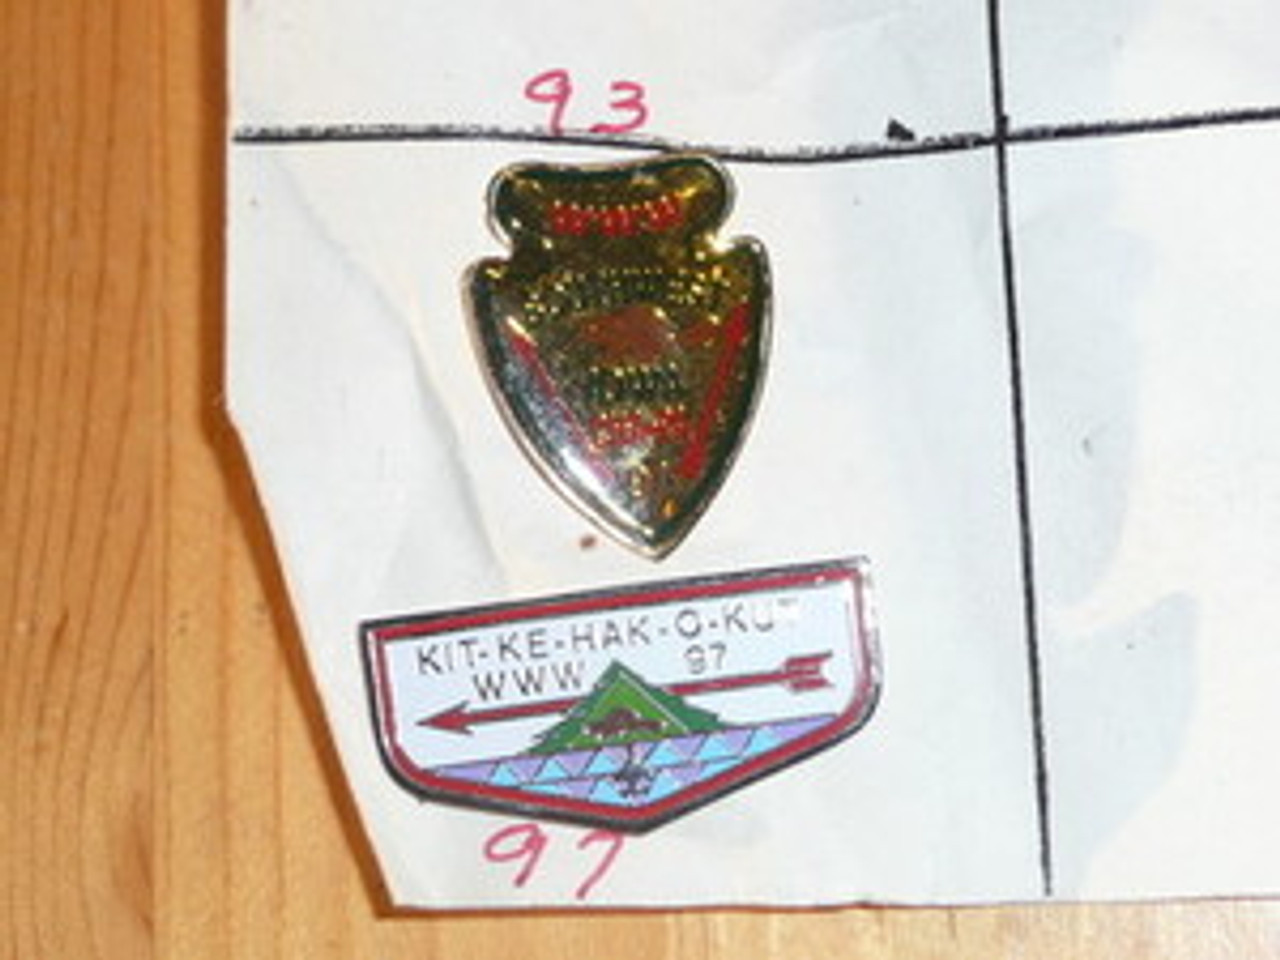 Kit-Ke-Hak-O-Kut O.A. Lodge #97 Flap Shaped Pin - Scout